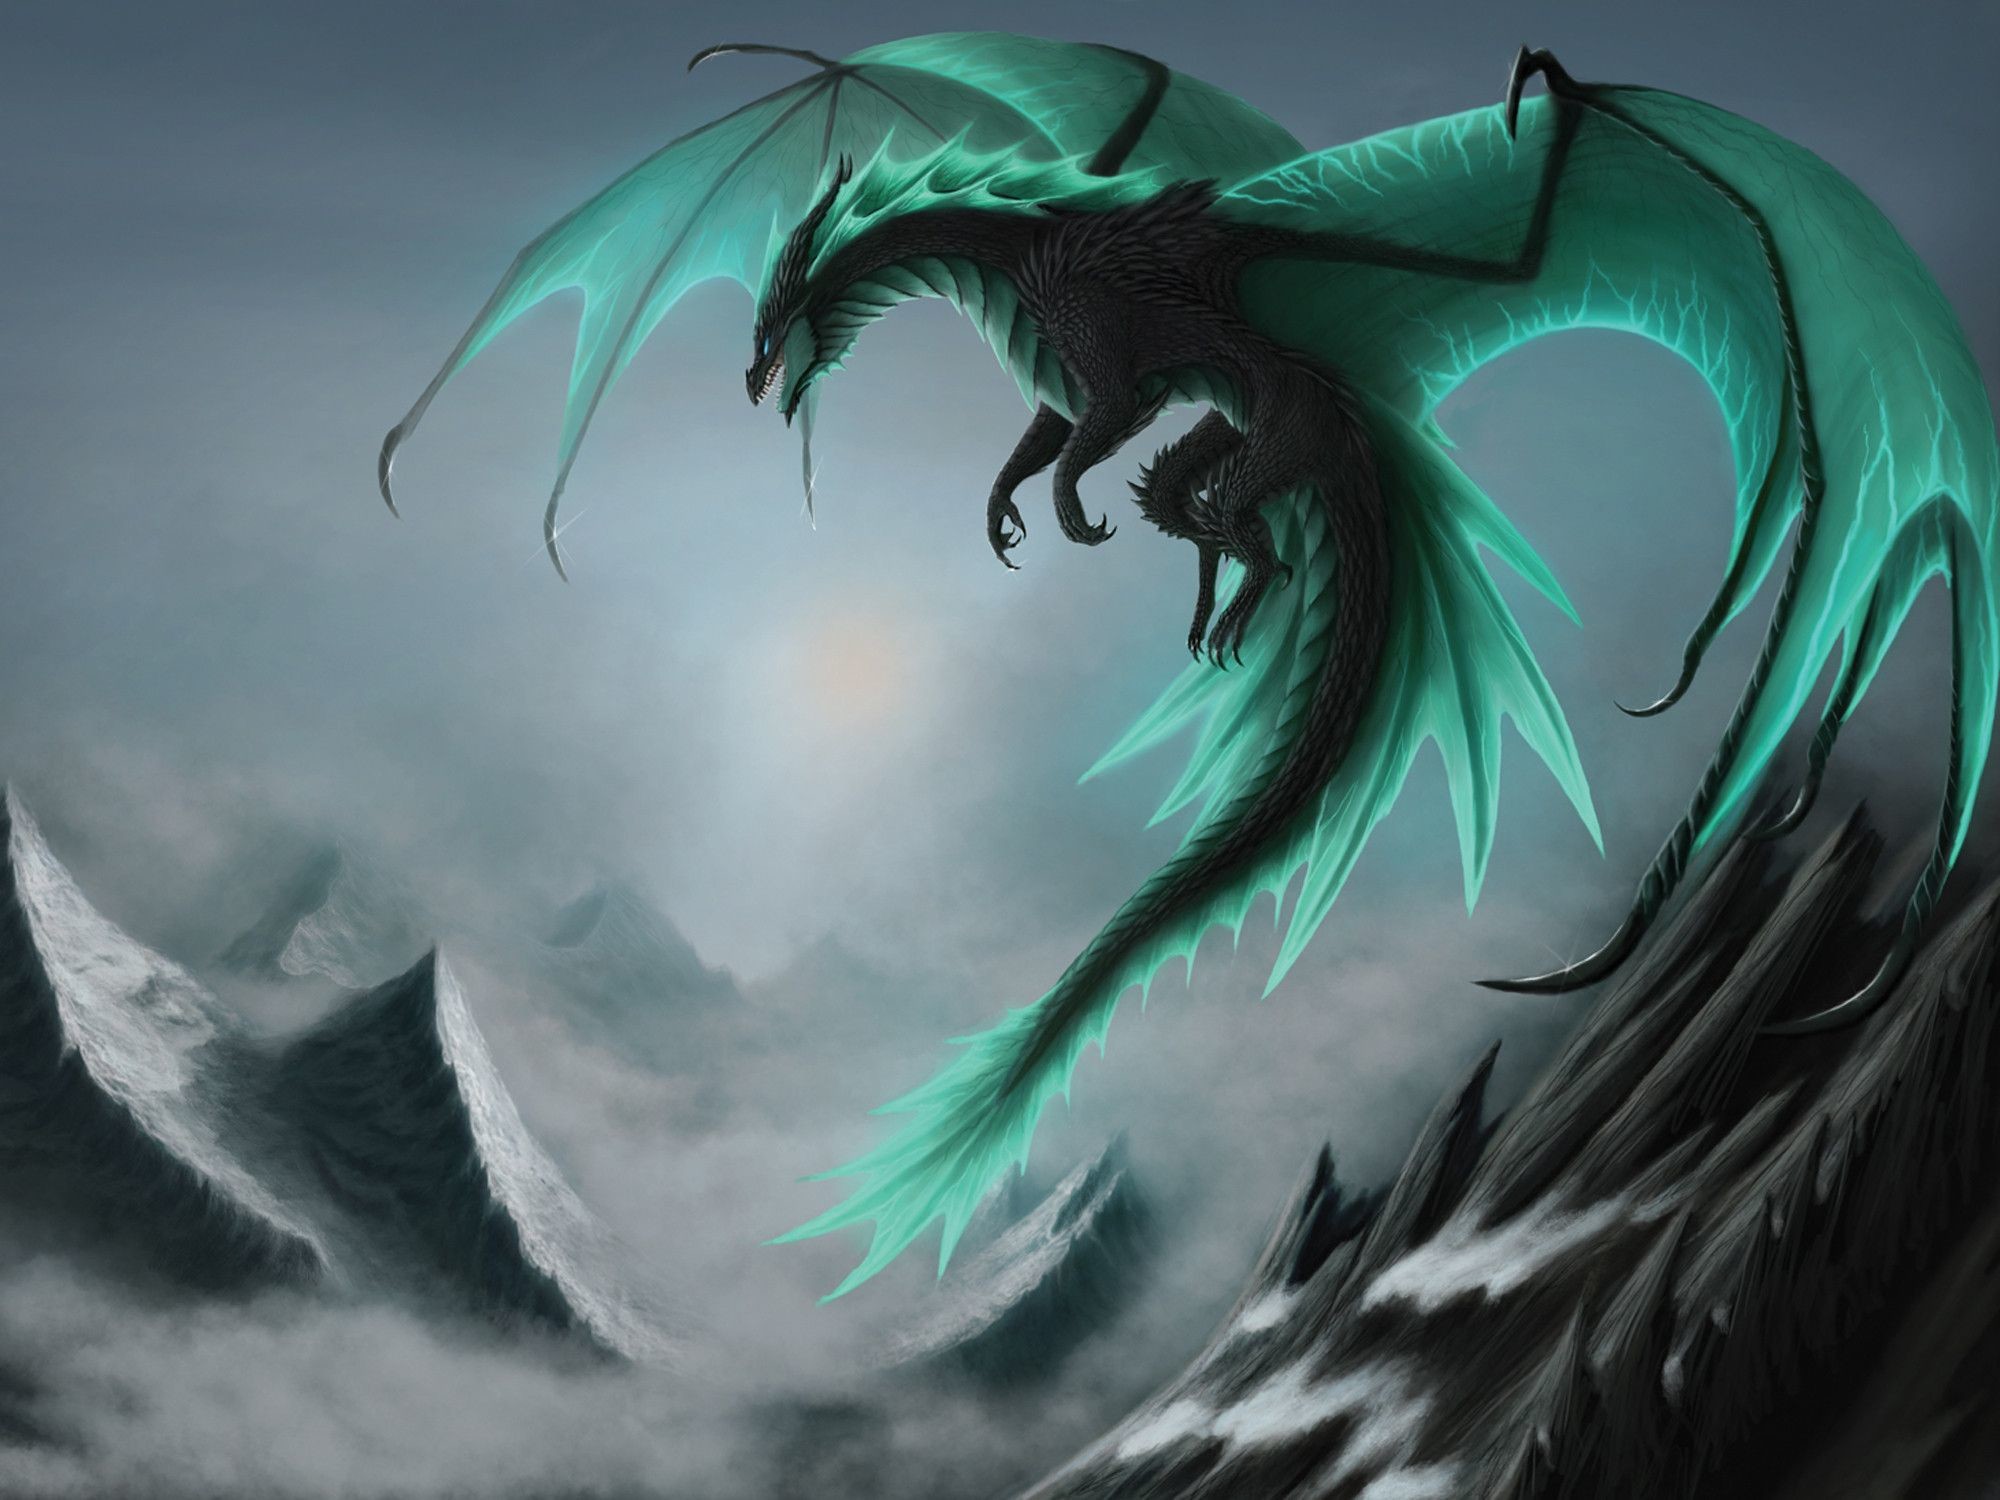 Hãy khám phá tuyệt vời với loài rồng đầy uy lực qua Dragon Wallpapers and Backgrounds. Với hình ảnh sinh động, bạn sẽ được đưa vào thế giới kỳ diệu và gặp gỡ những con rồng tuyệt vời nhất từ trước đến nay.